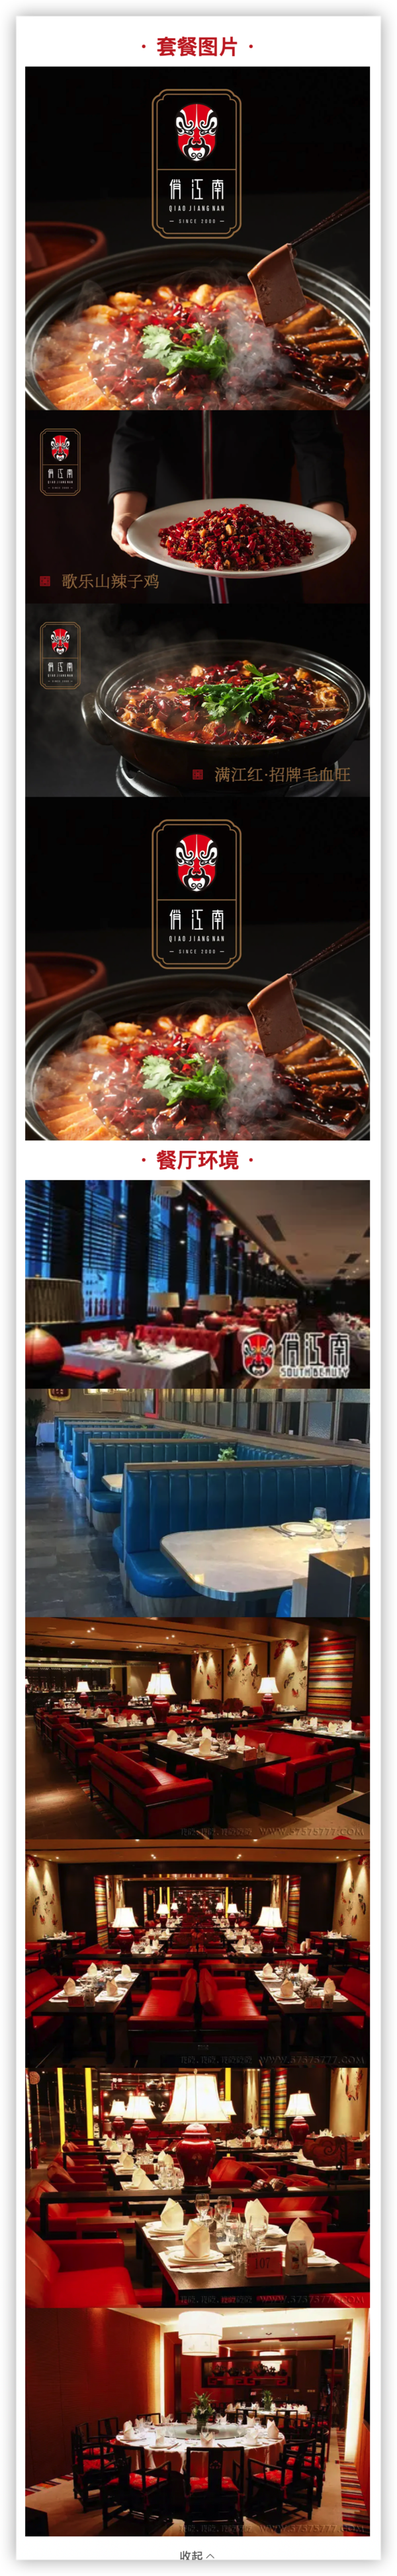 上海环球金融中心 俏江南 双人自选川味套餐